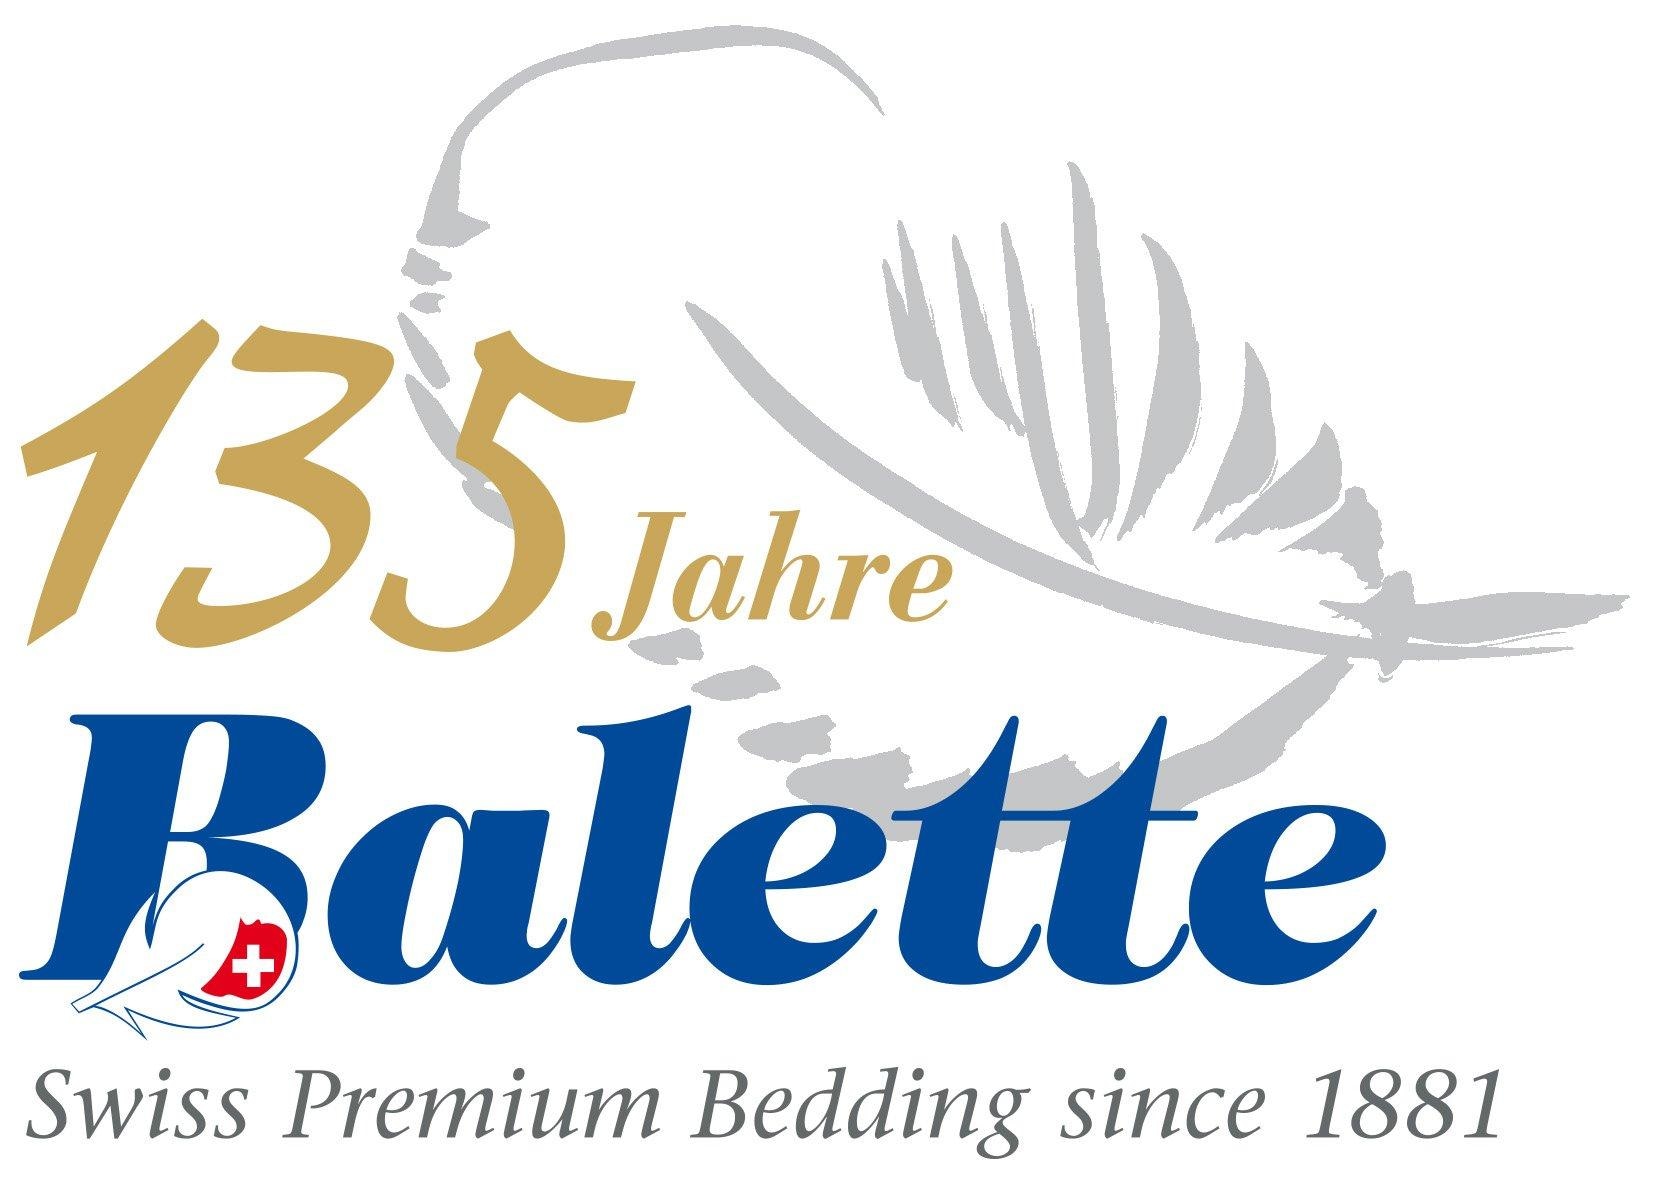 Balette Gänsedaunenkopfkissen »Pauline«, Füllung: Neue reine Gänsefederchen 15% und Gänsedaunen 85% weiss, Bezug: 100% Baumwolle, (1 St.)